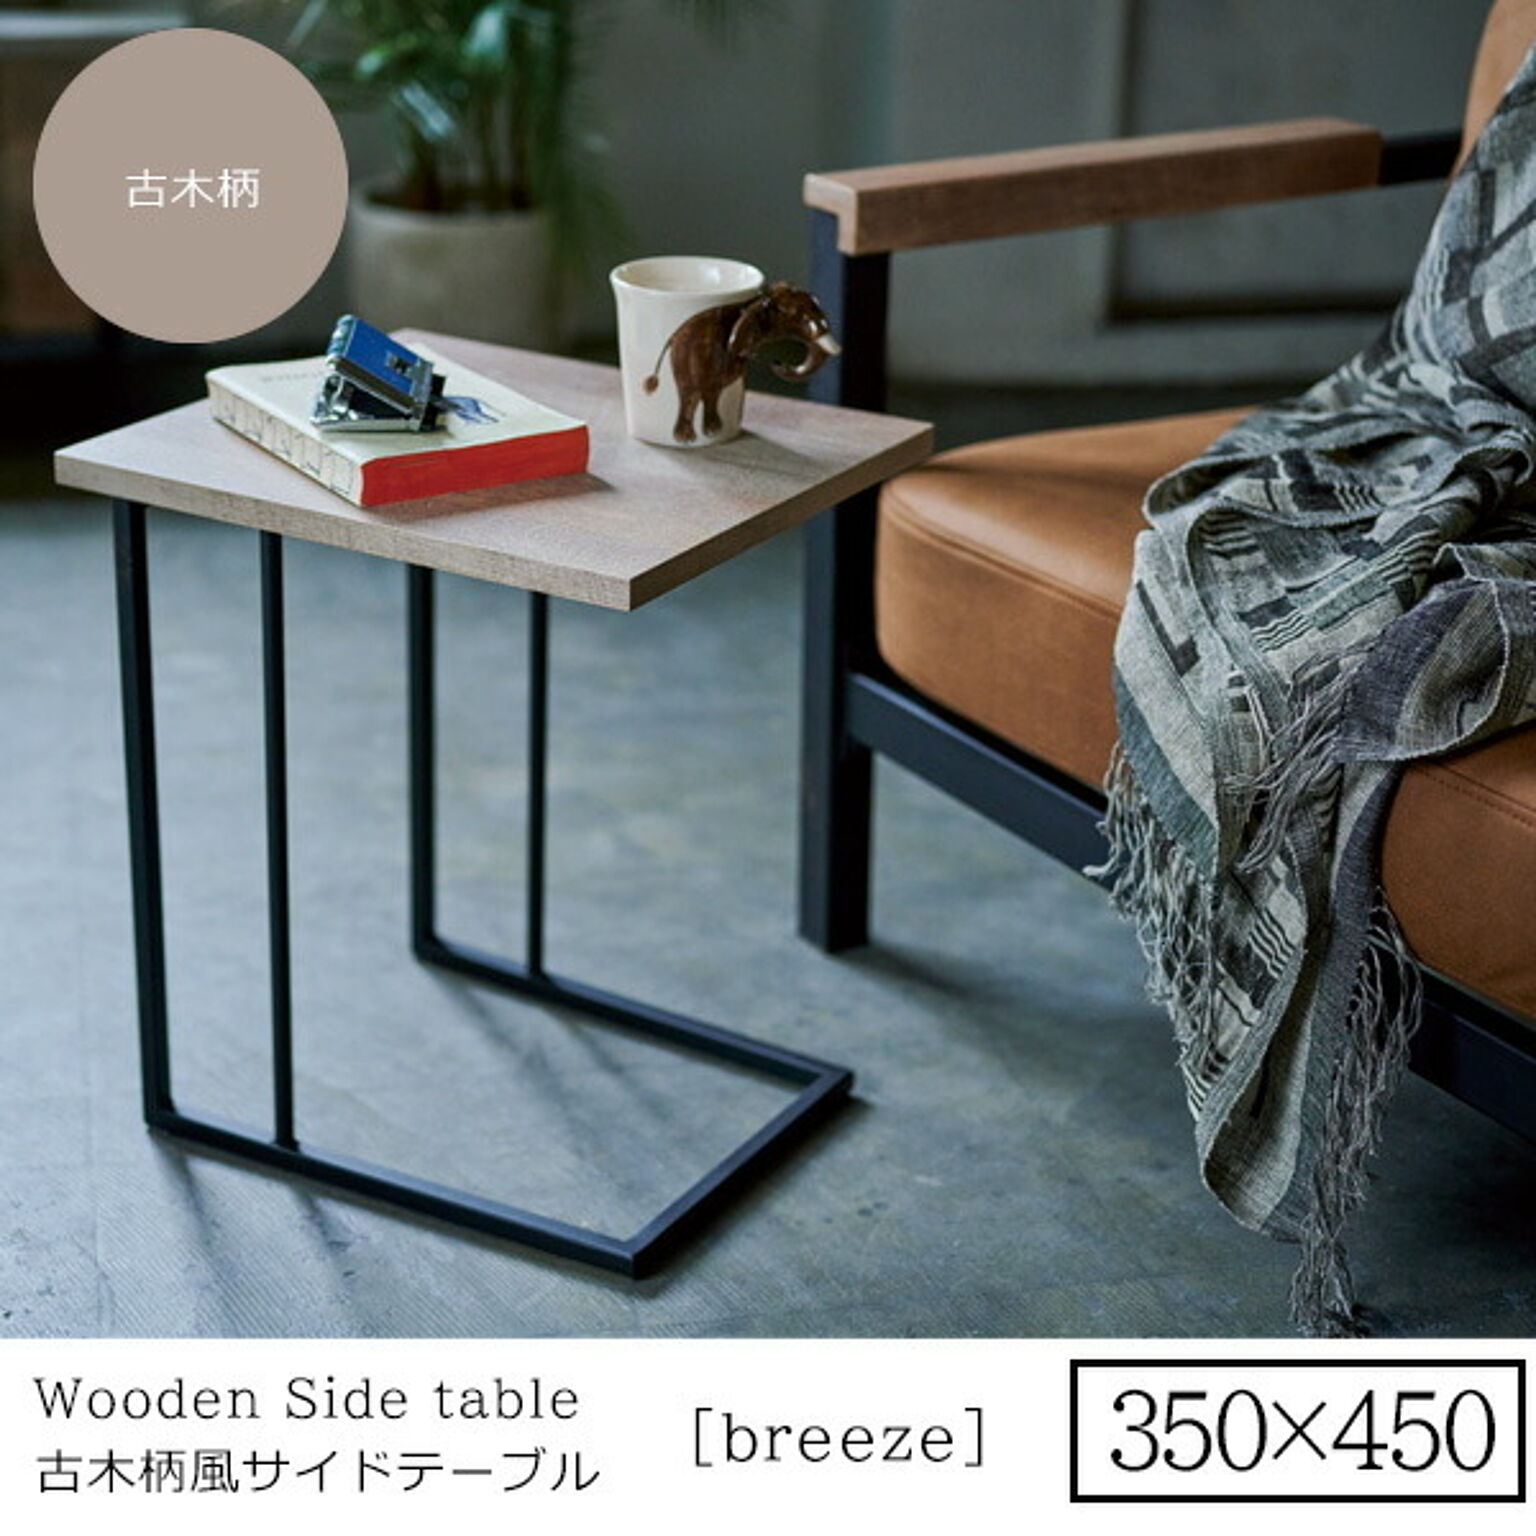 350x450 ： リビングサイドテーブル【breeze】 古木柄 (ナチュラル)  センターテーブル コーヒーテーブル リビング